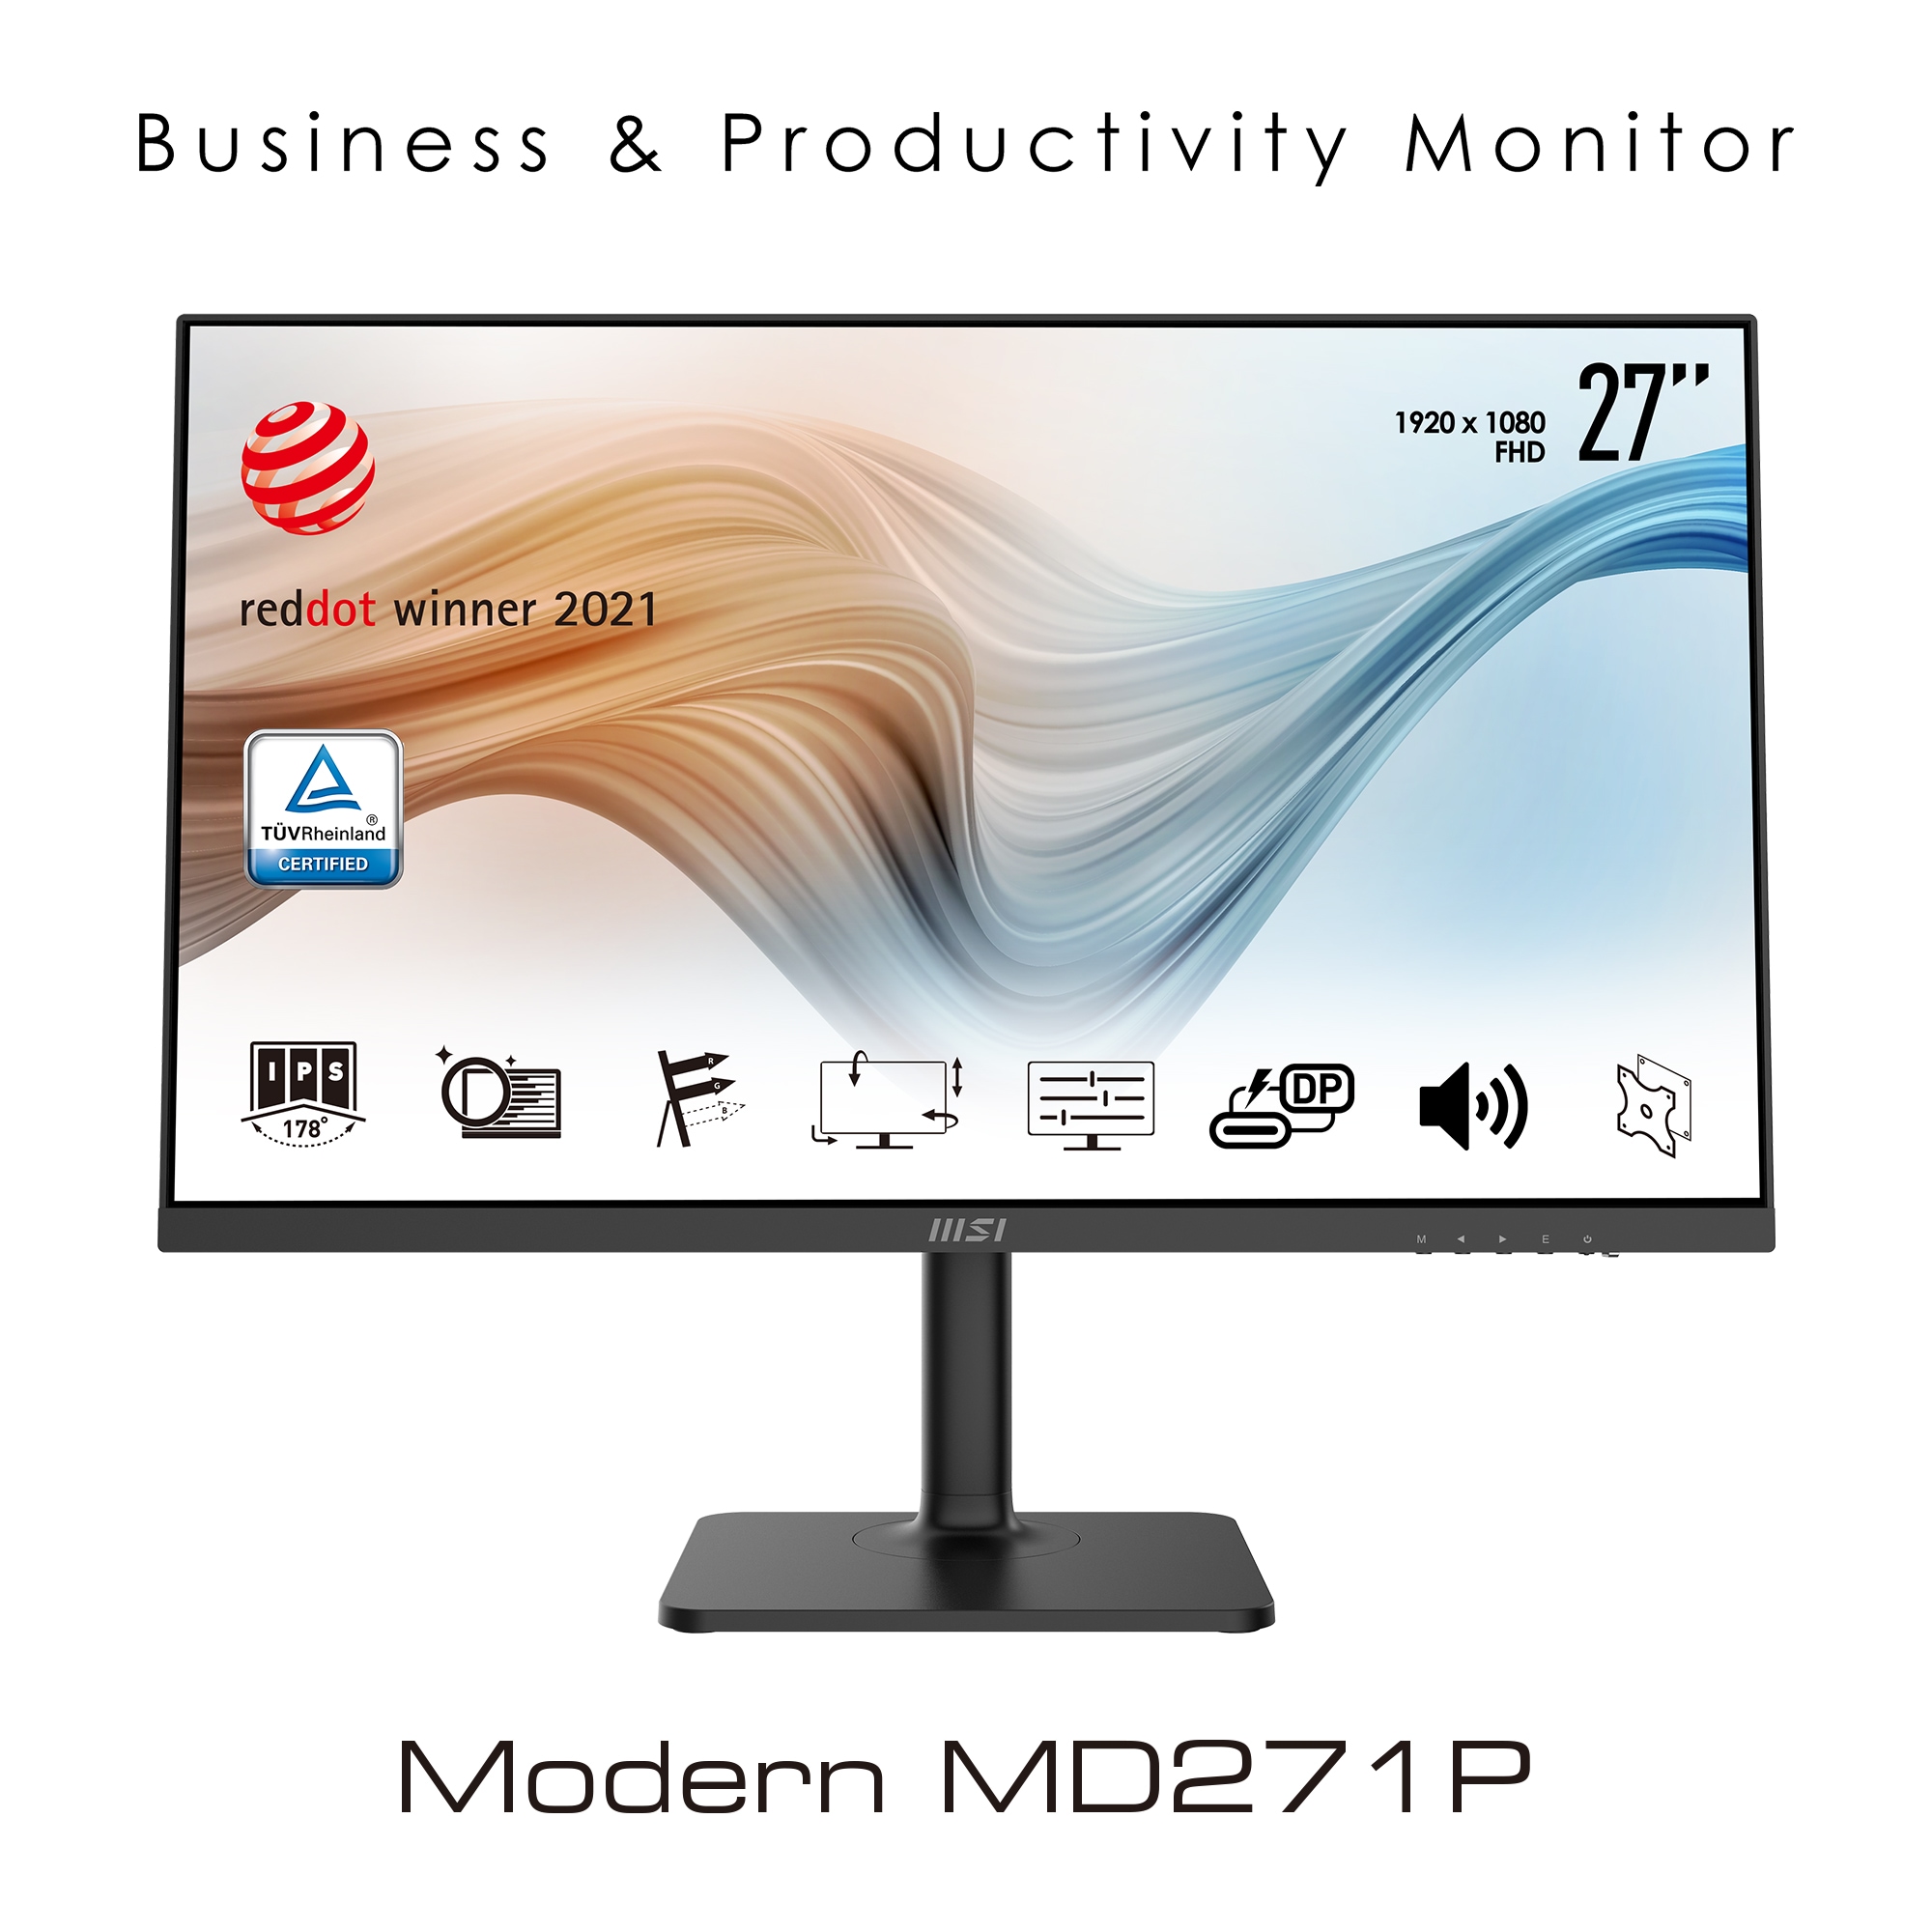 MSI LED-Monitor »Modern MD271P«, 69 cm/27 Zoll, 1920 x 1080 px, Full HD, 5 ms Reaktionszeit, 75 Hz, 3 Jahre Herstellergarantie, höhenverstellbar, USB-C